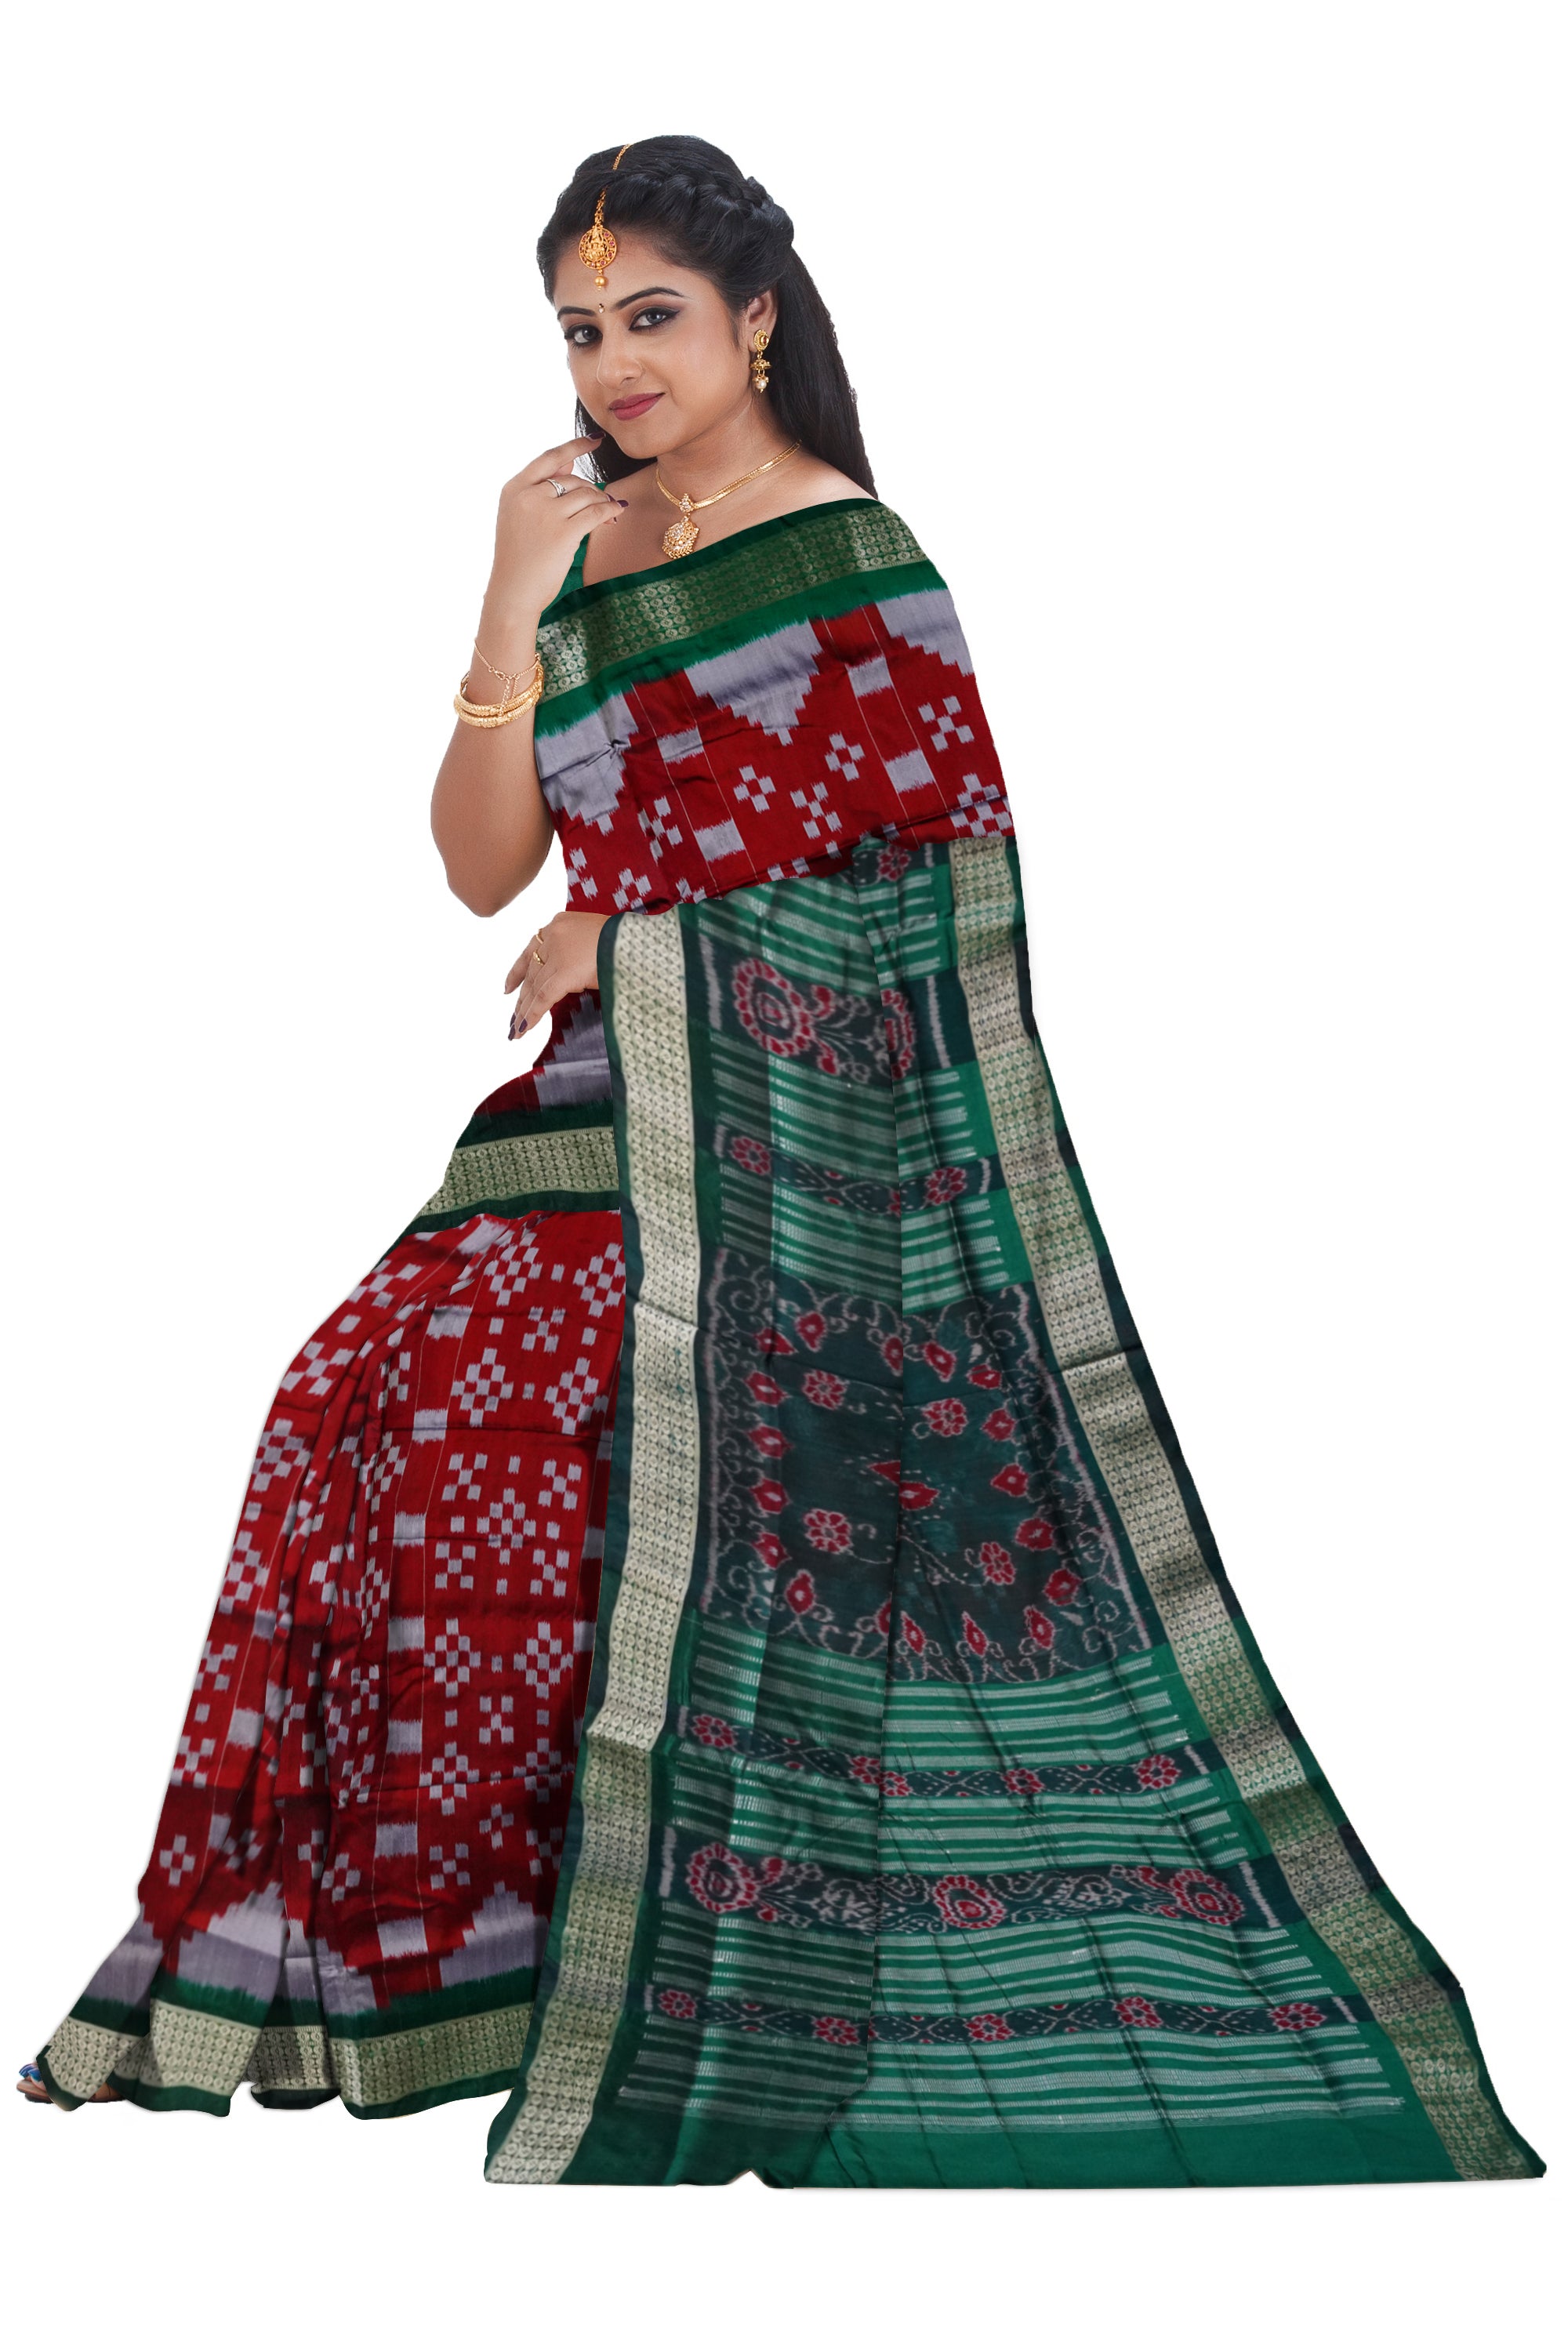 Whole body pasapali pattern sapta pata saree in Maroon and Green color. - Koshali Arts & Crafts Enterprise